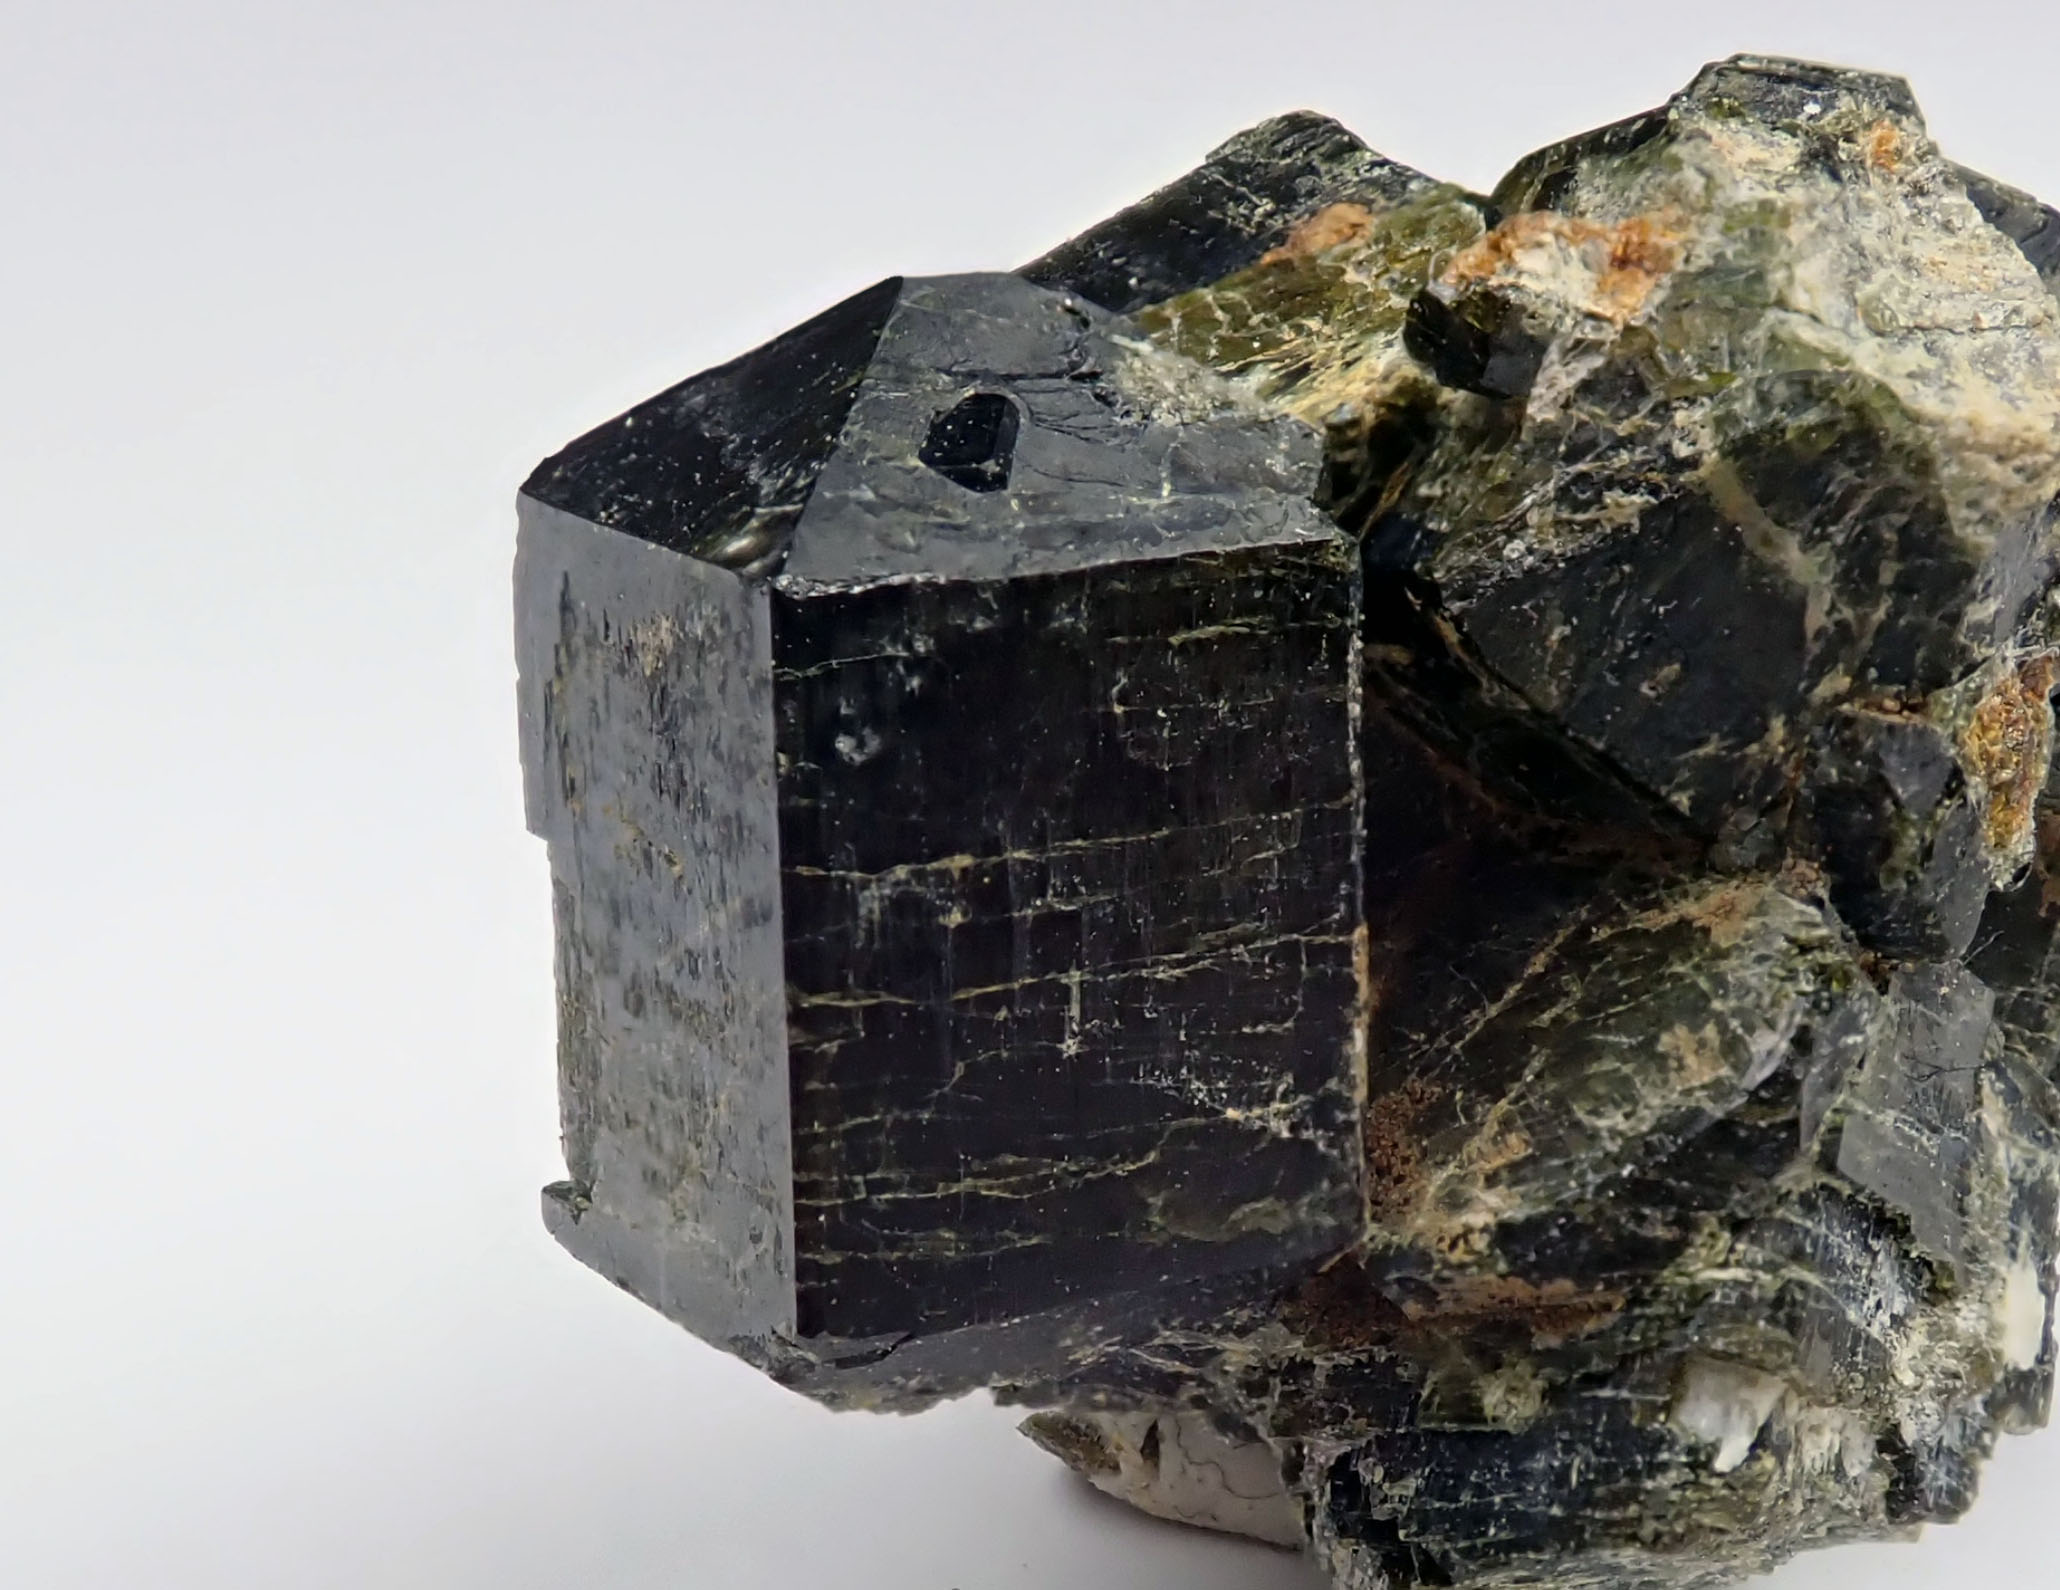 ベスブ石(Vesuvianite, べすぶせき,ヴェスヴィアナイト)の結晶 スカルンに産するベスブ石の結晶 宮崎県  vesuvianite crystal from skarn in Miyazaki, Japan